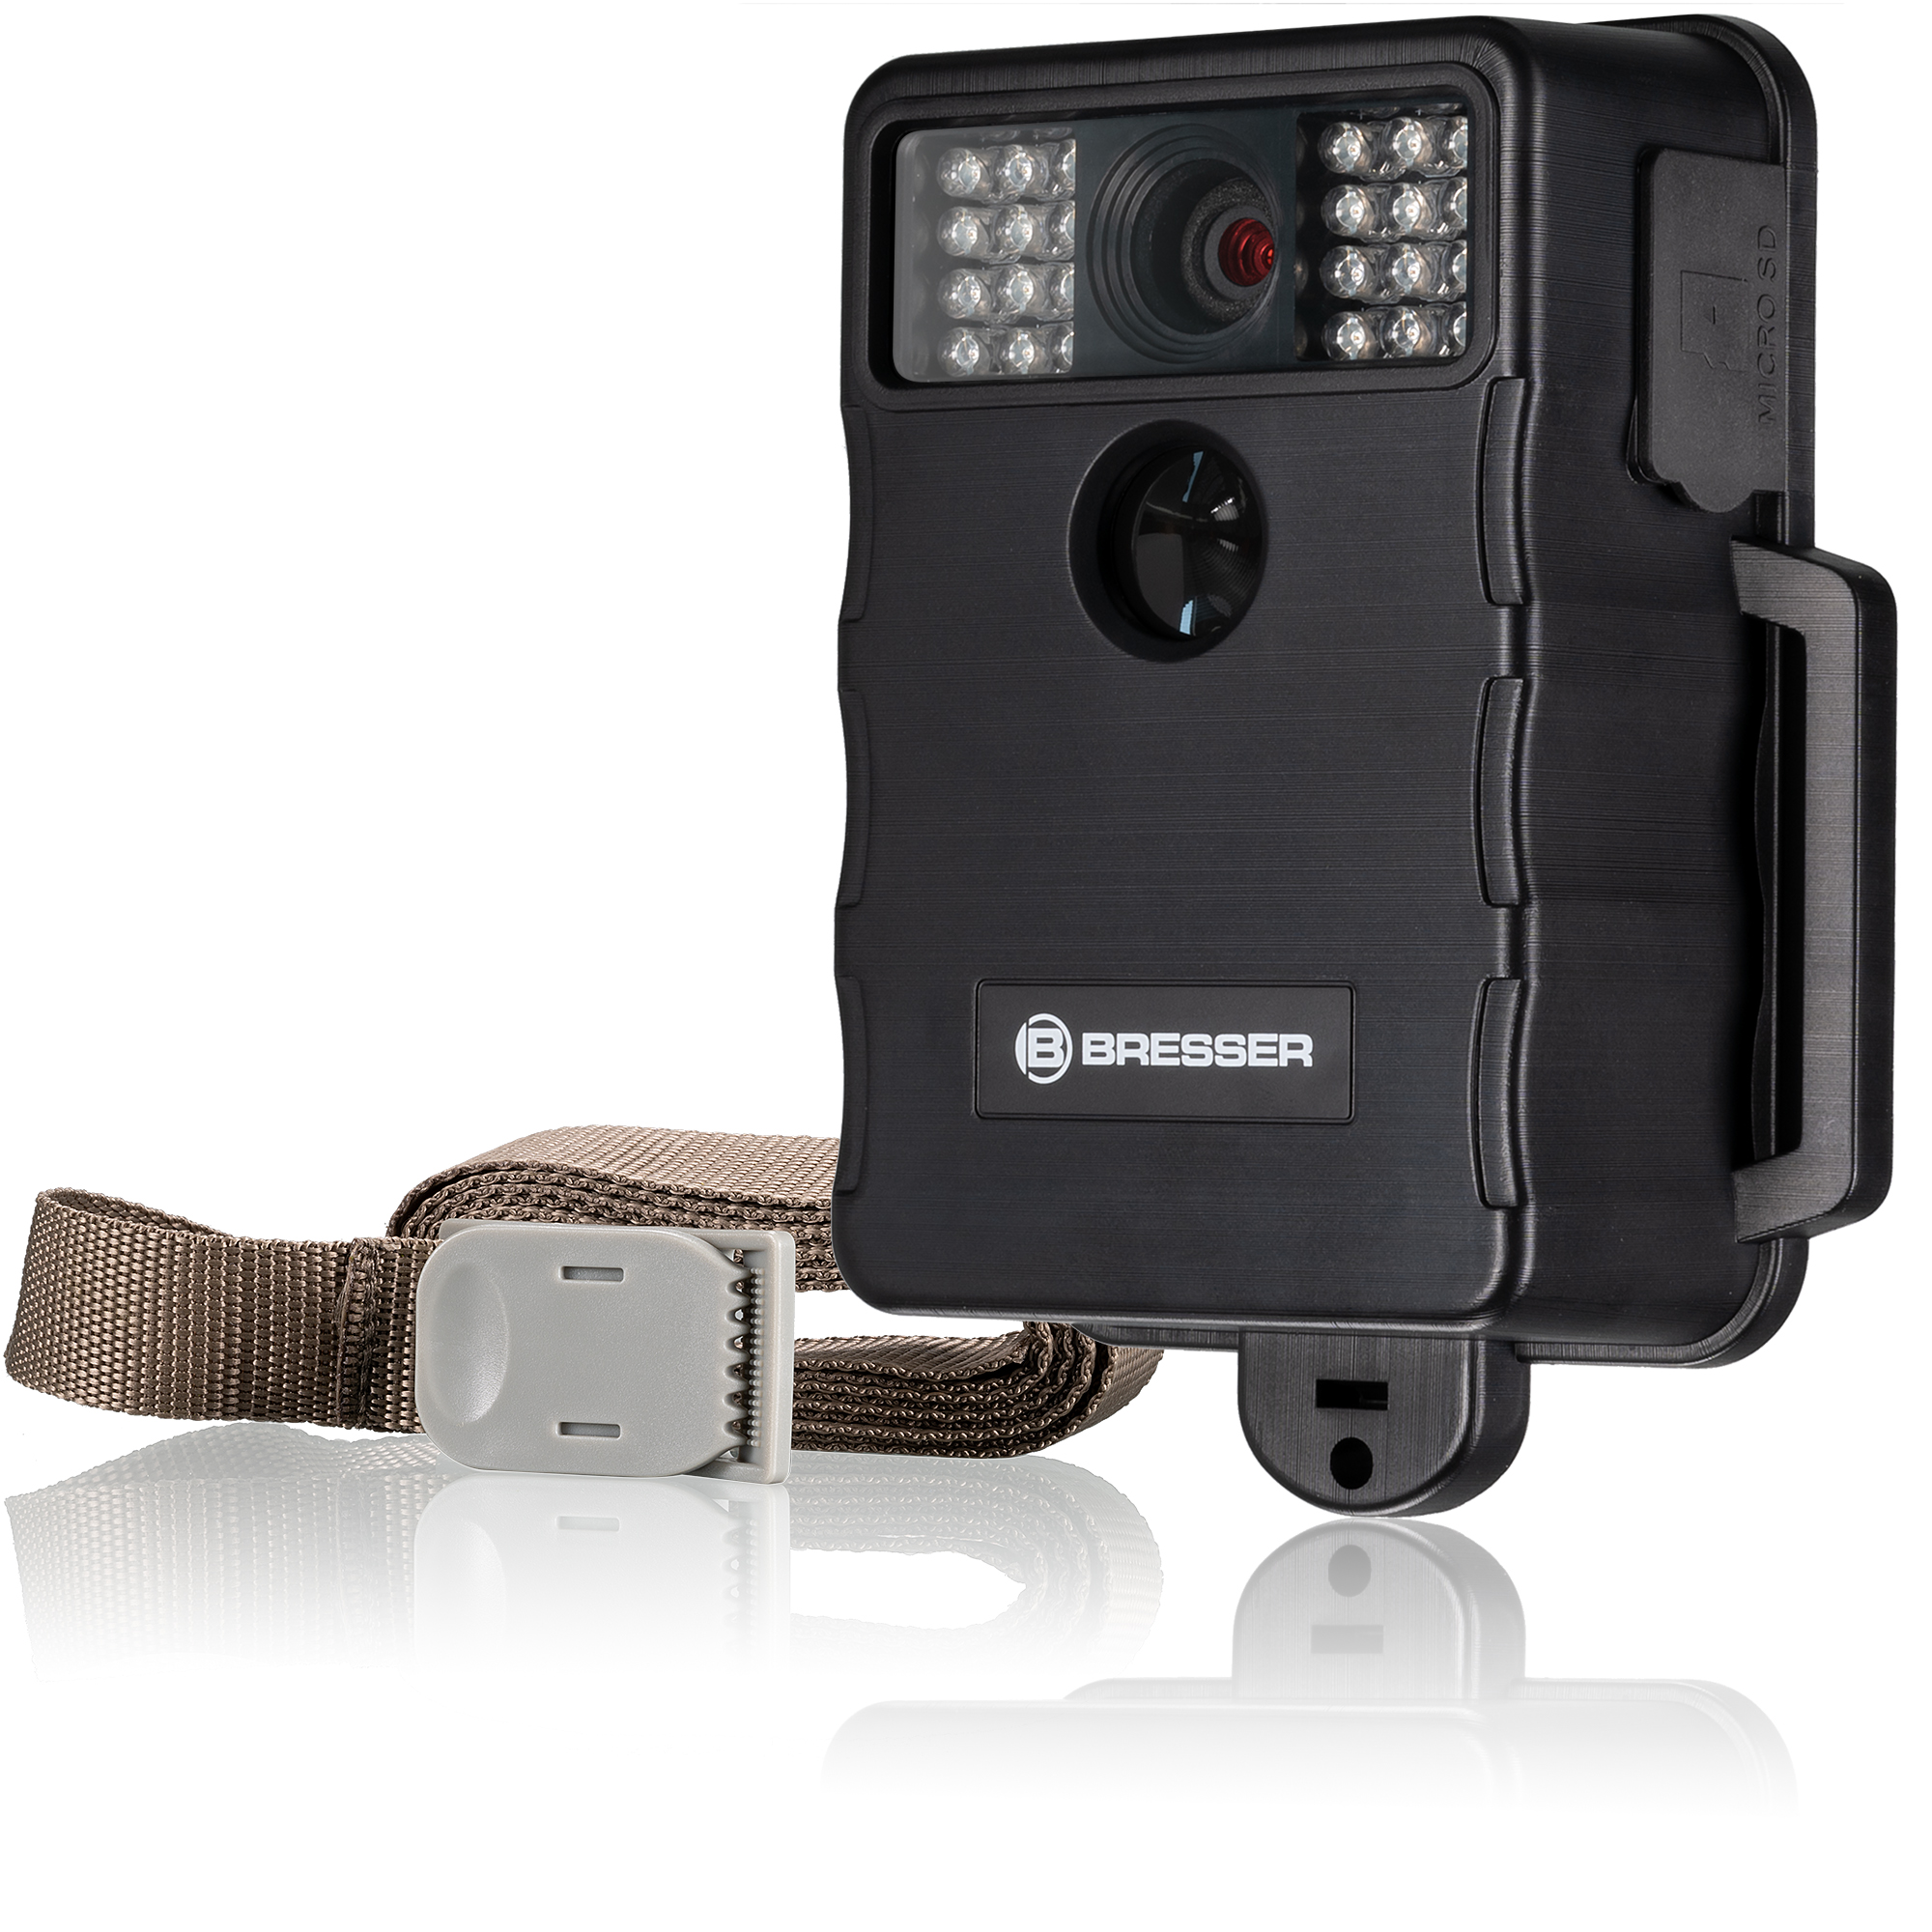 Détecteur de mouvement avec images (caméra et flash)